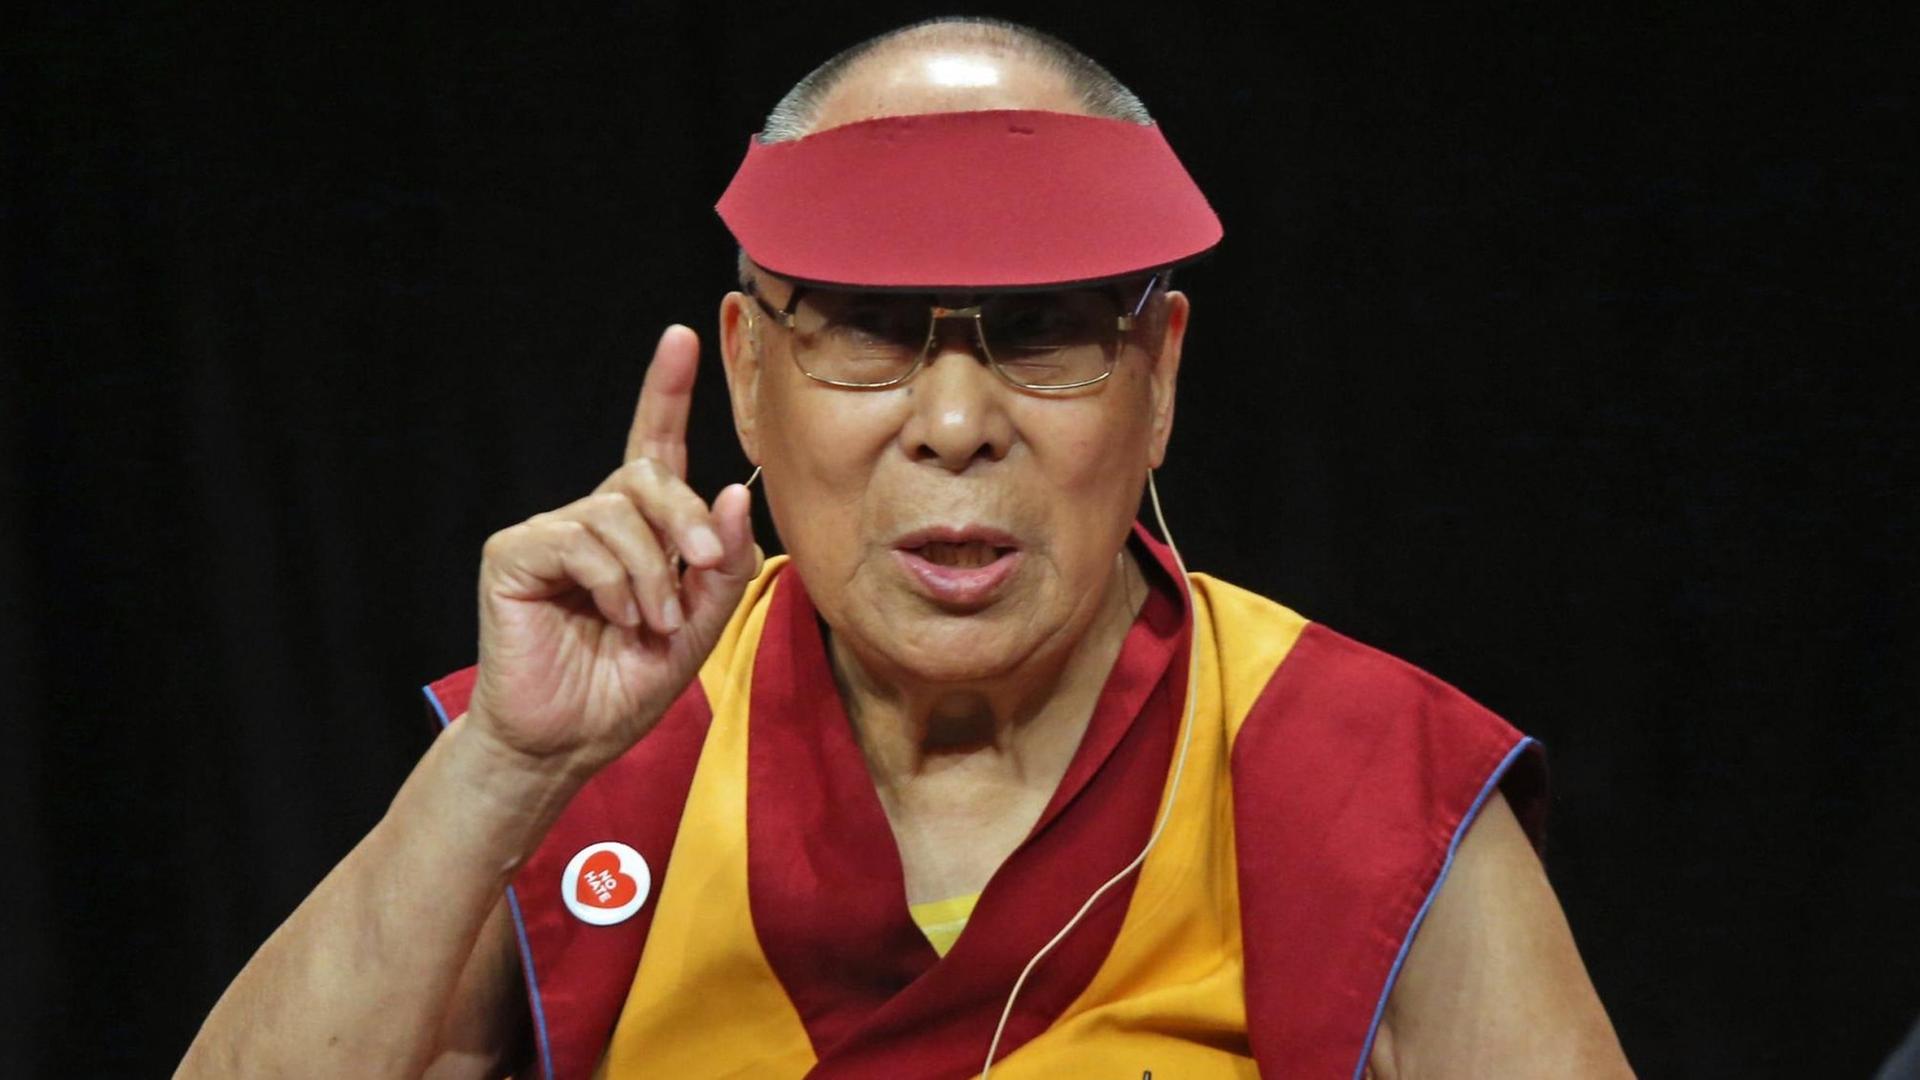 Der Dalai Lama spricht auf einer Konferenz mit Jugendlichen zum Thema "Toleranz und Europa" in Straßburg.